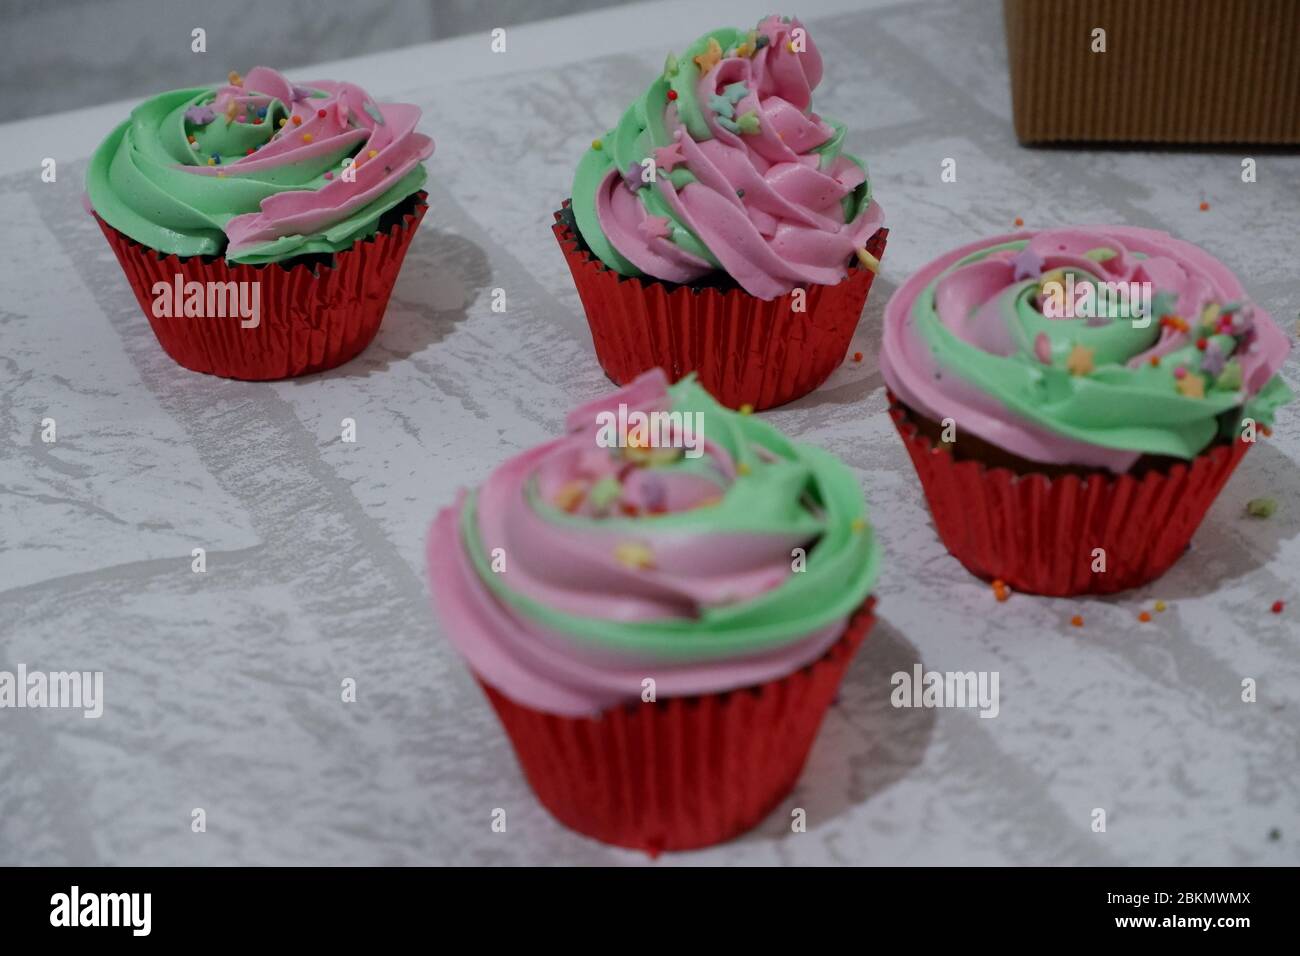 grupo de cupcakes, de dos tonos, rosa y verde claro para el frunce de la cubierta Foto de stock